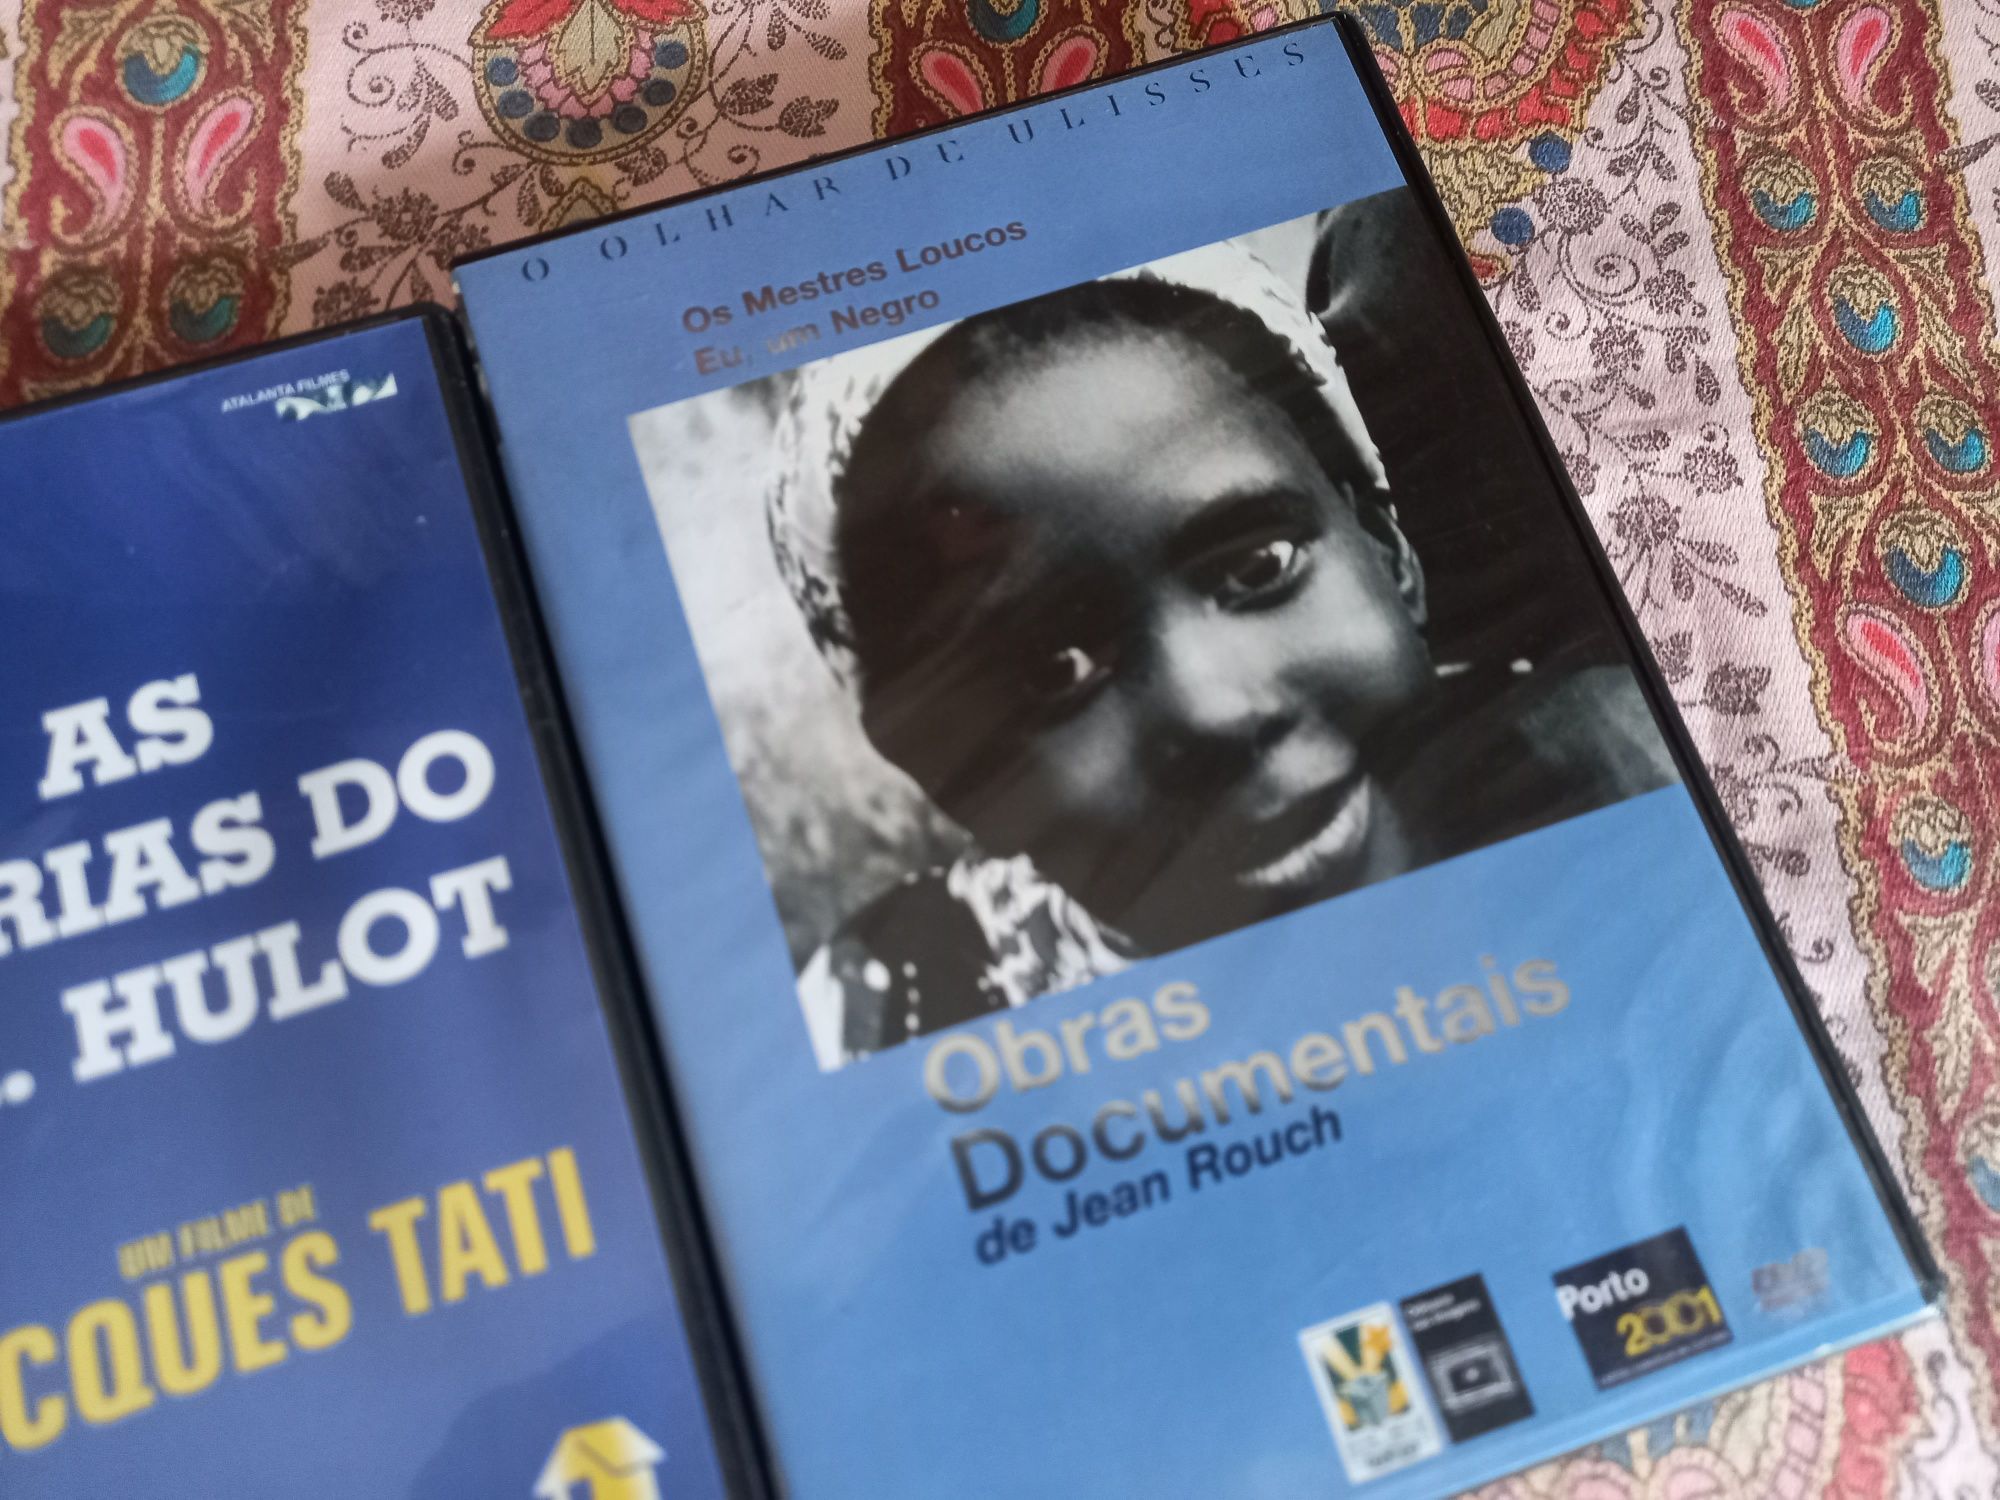 DVDs originais de cinema francês